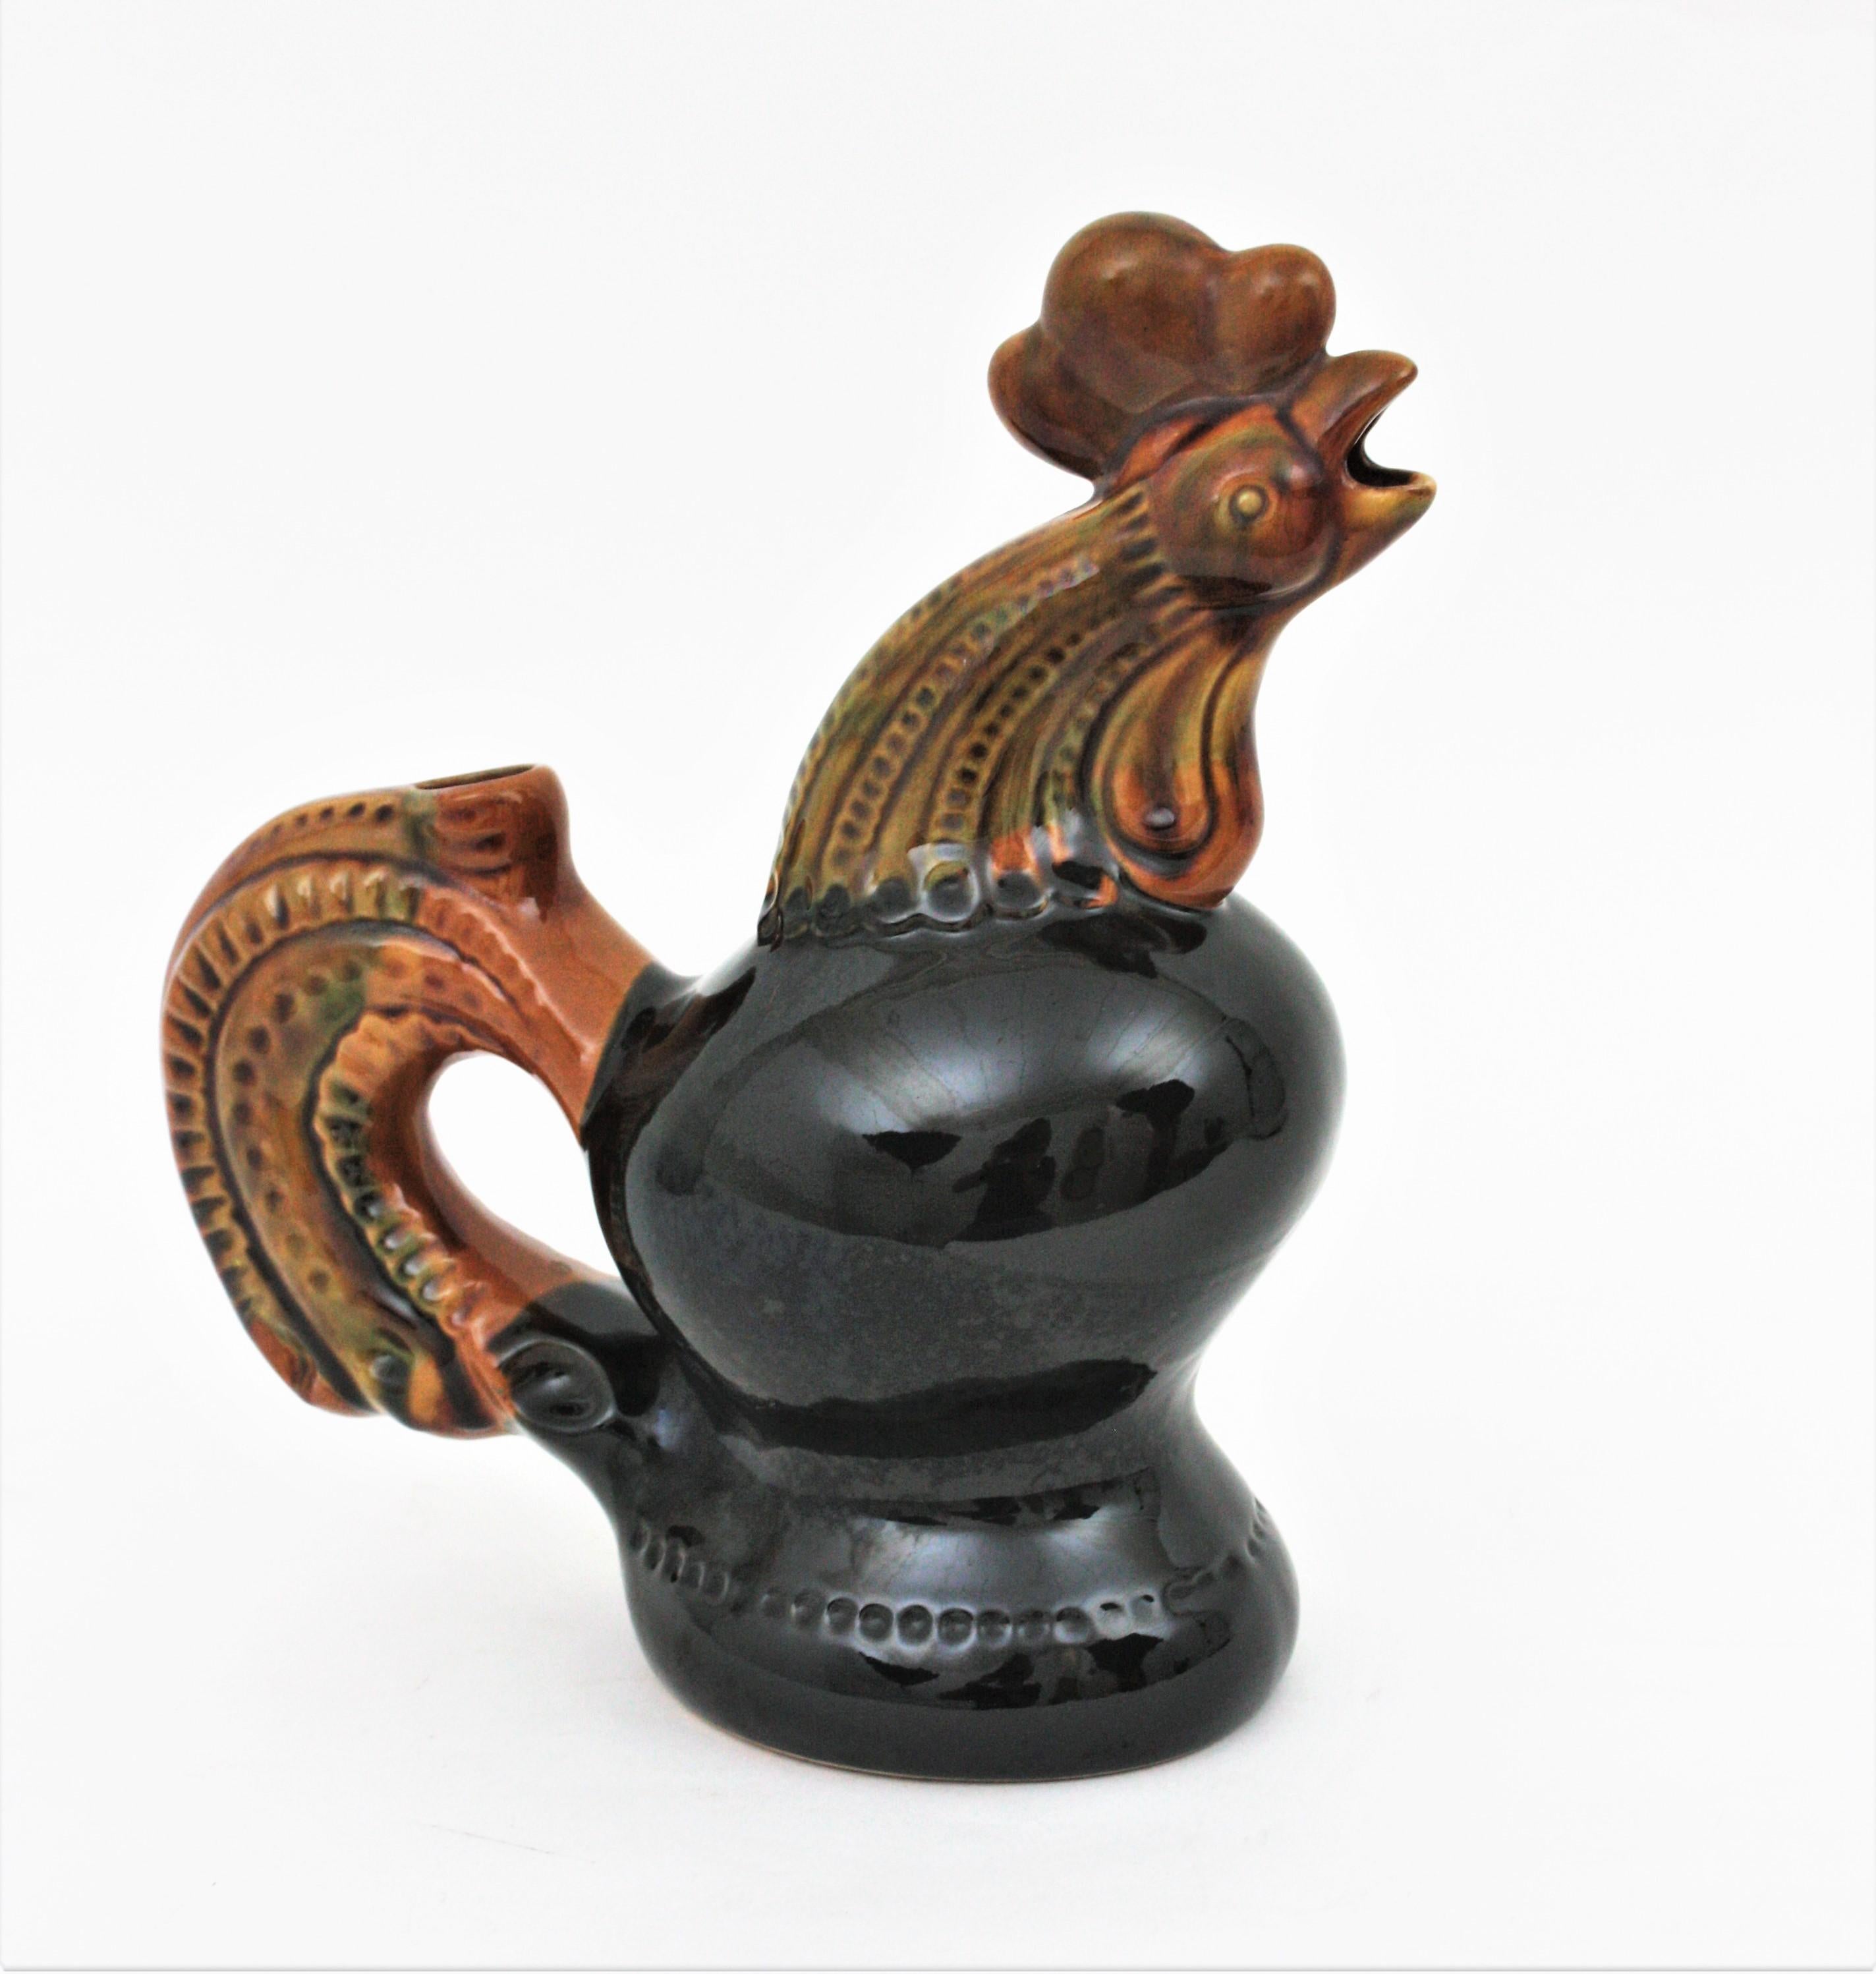 Cruche / pichet à coq en céramique Majolica noire et ambrée, Ukraine, années 1950-1960.
Un accent cool pour toute cuisine ou pour être utilisé comme pichet de service. Collectional fait partie d'une collection de céramiques présentée dans une